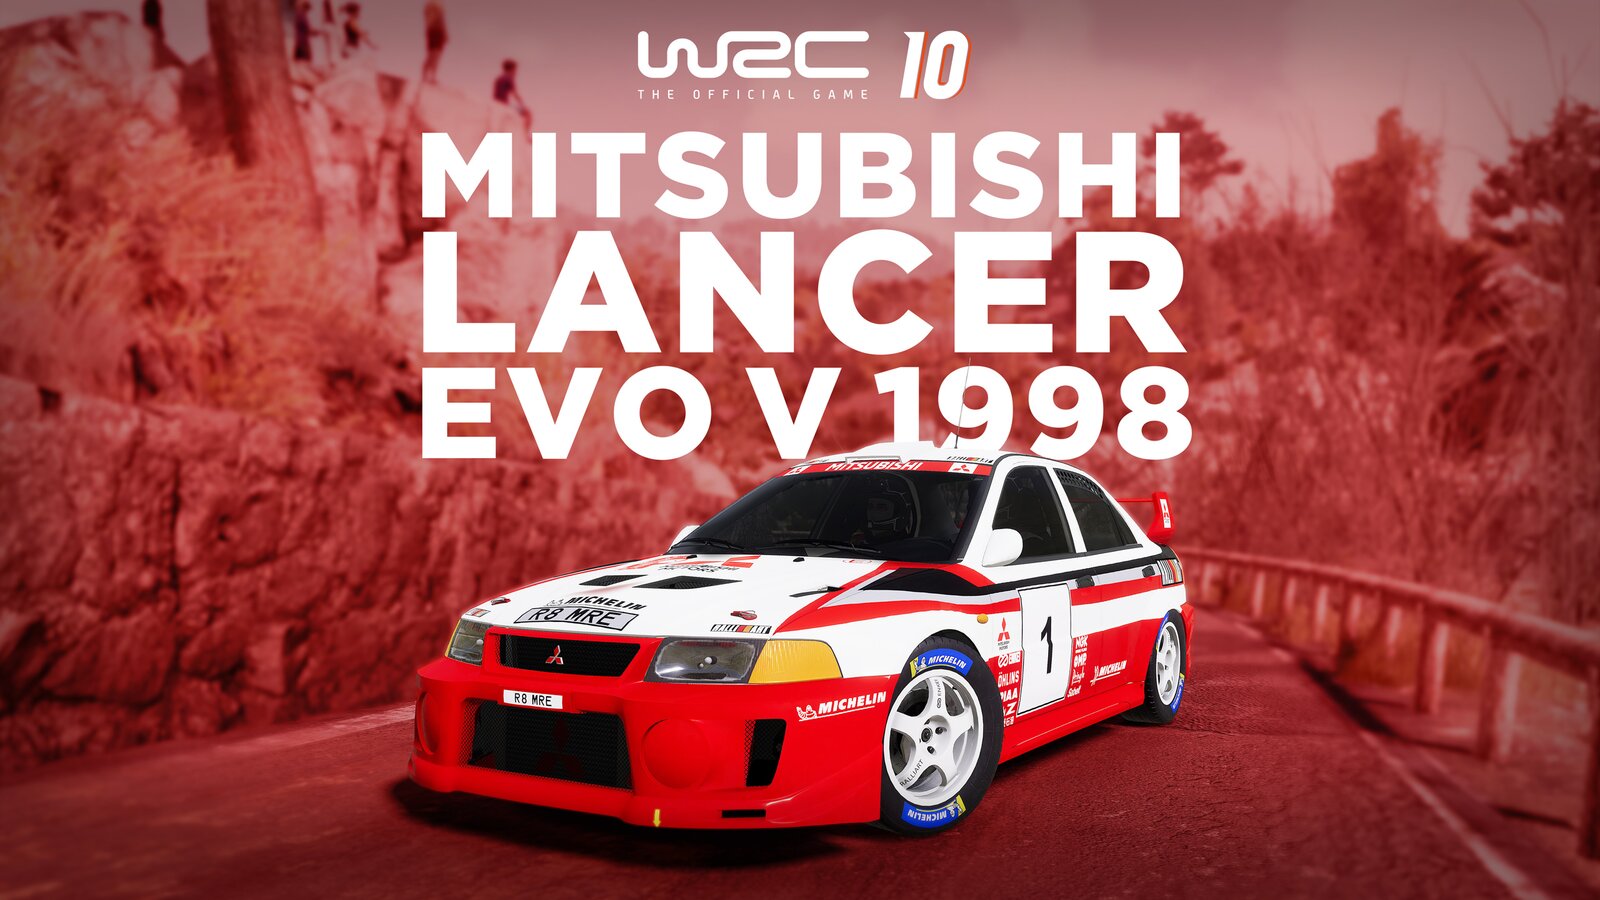 WRC 10 - Mitsubishi Lancer Evo V 1998